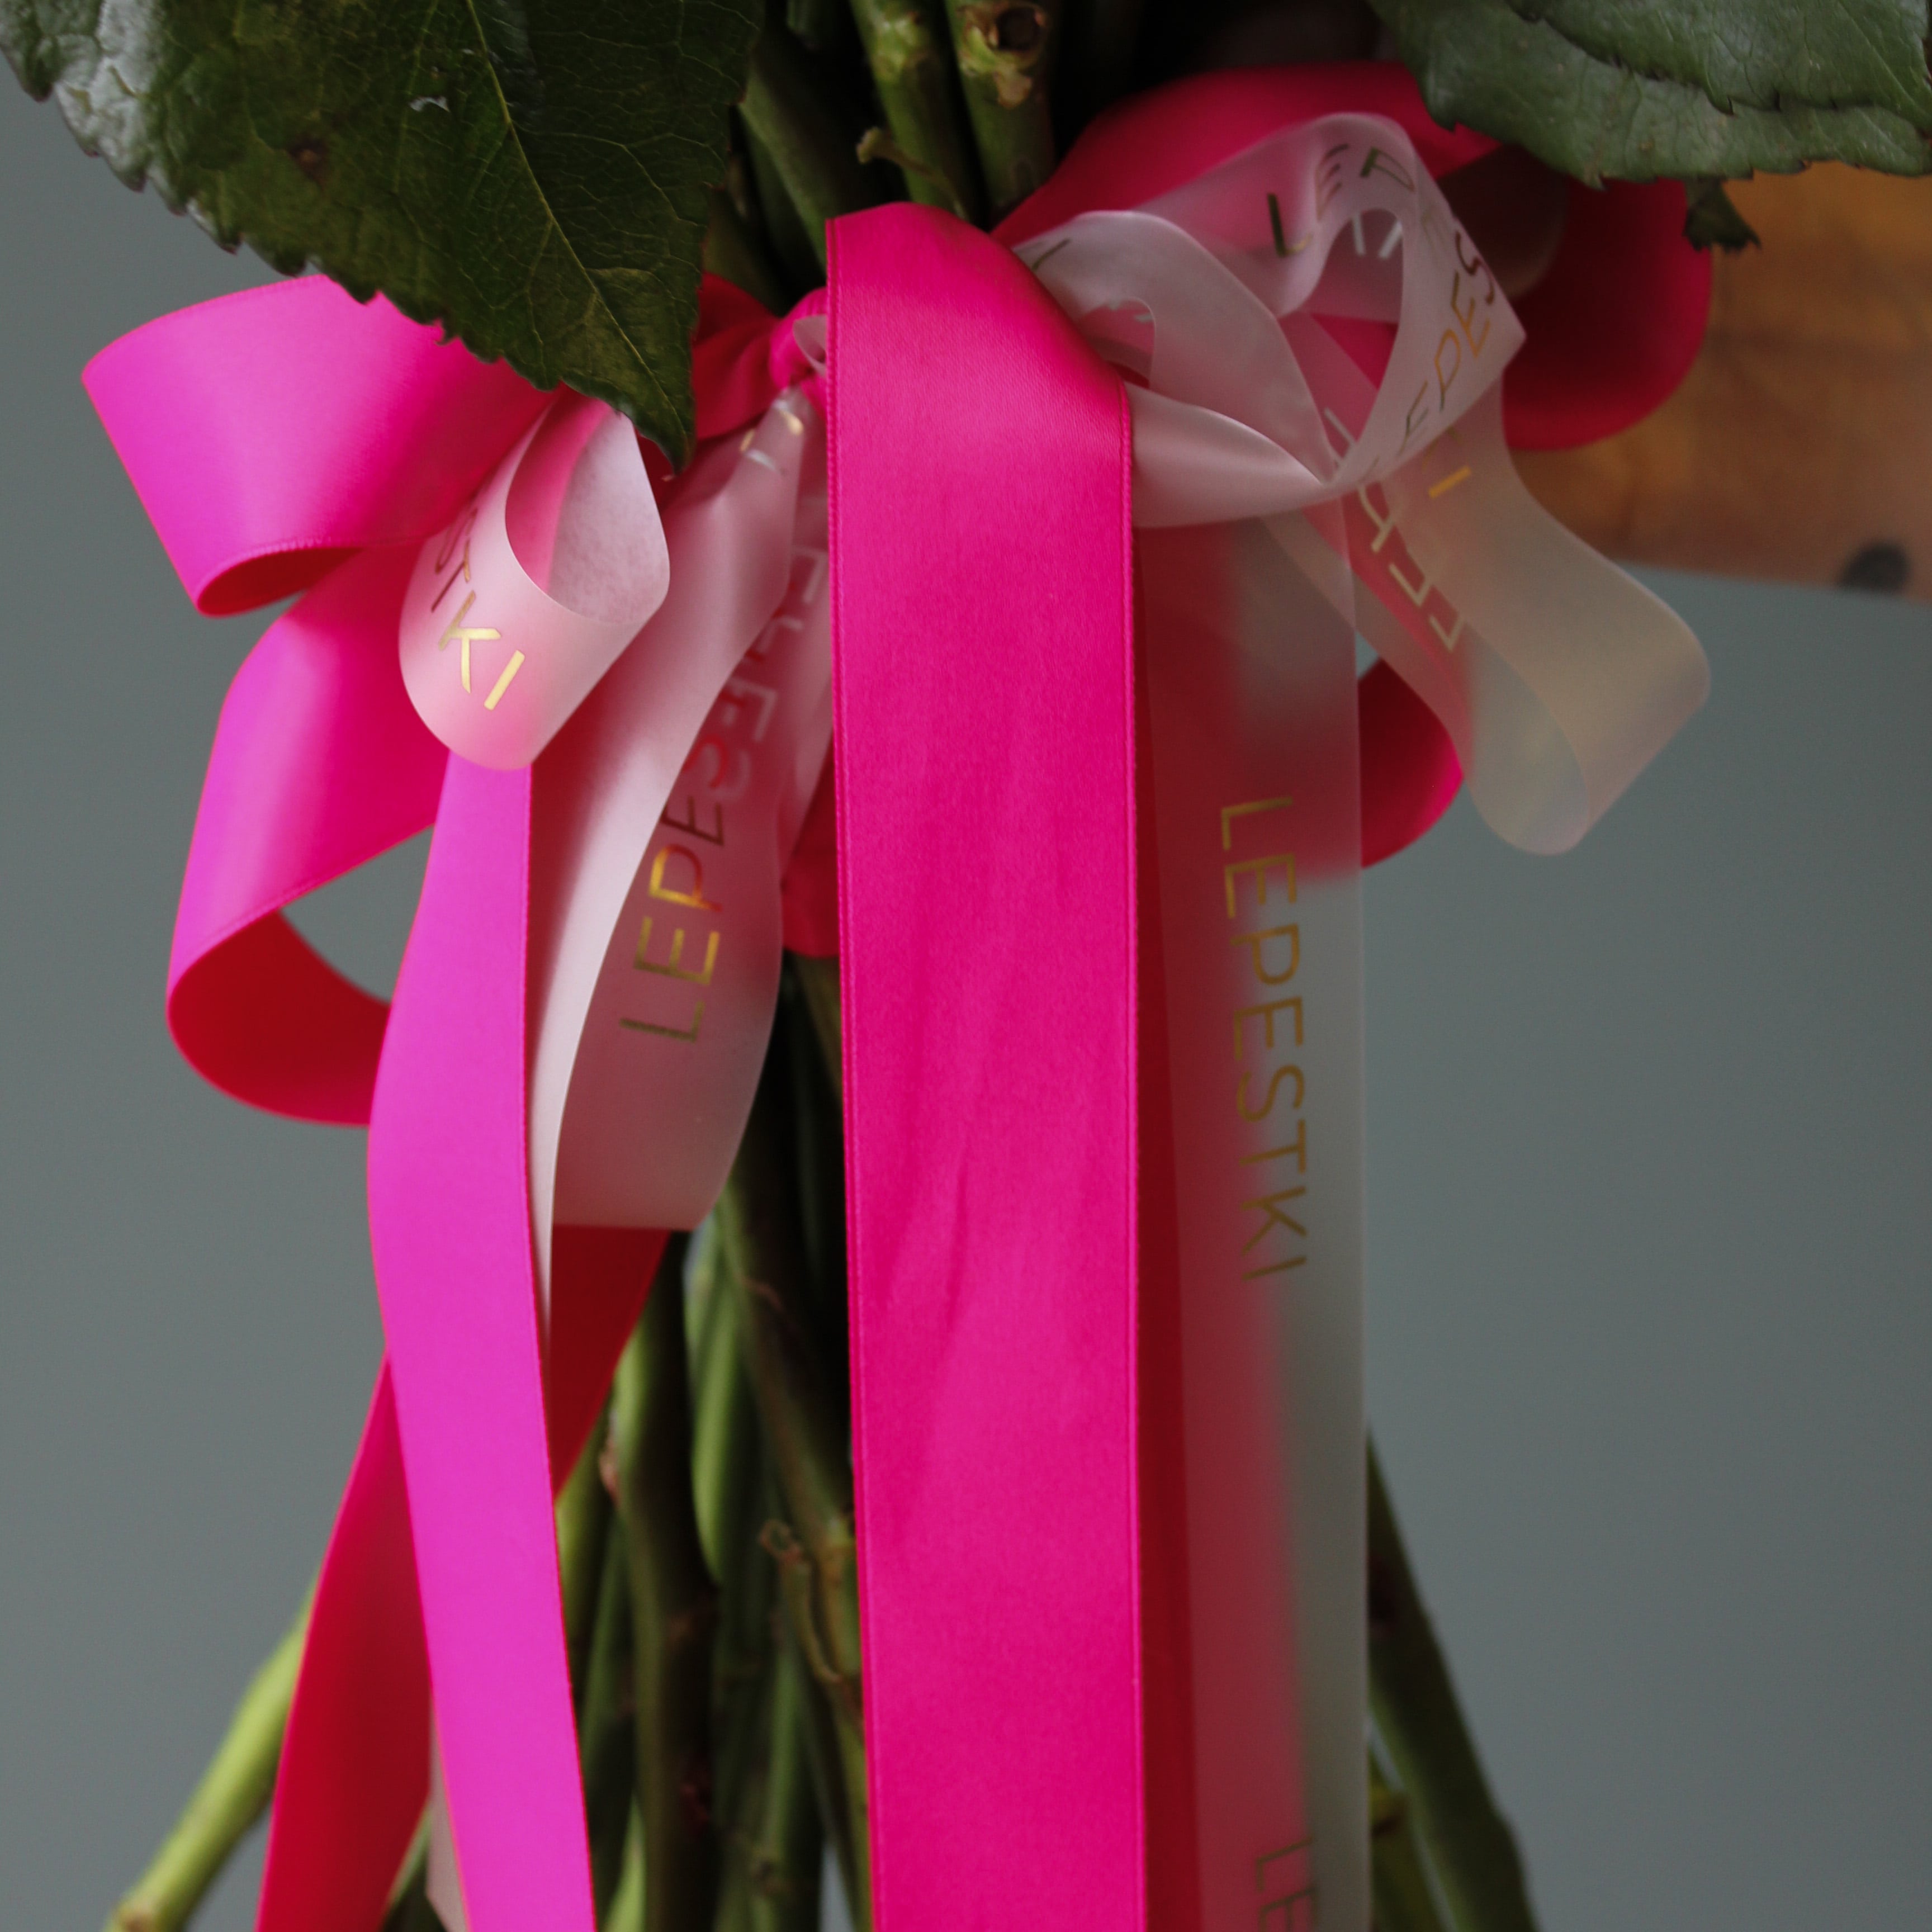 25 пионовидных розовых роз Эквадор